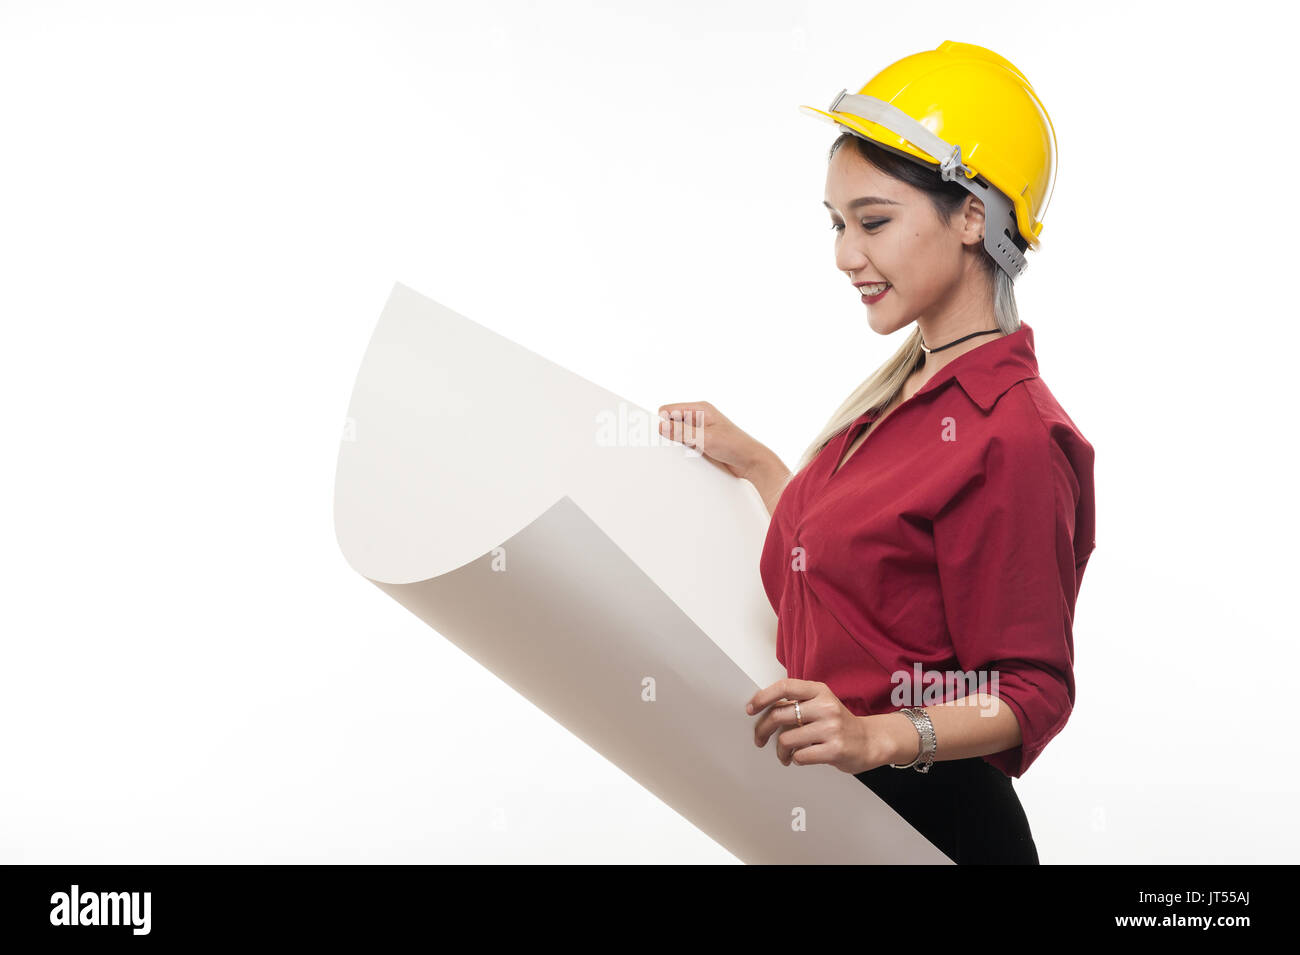 Junge asiatische Frau Architekt mit roten Hemd und gelben Helm Lächeln beim Lesen Blaupausen. industriellen Beruf Personen Konzept Stockfoto